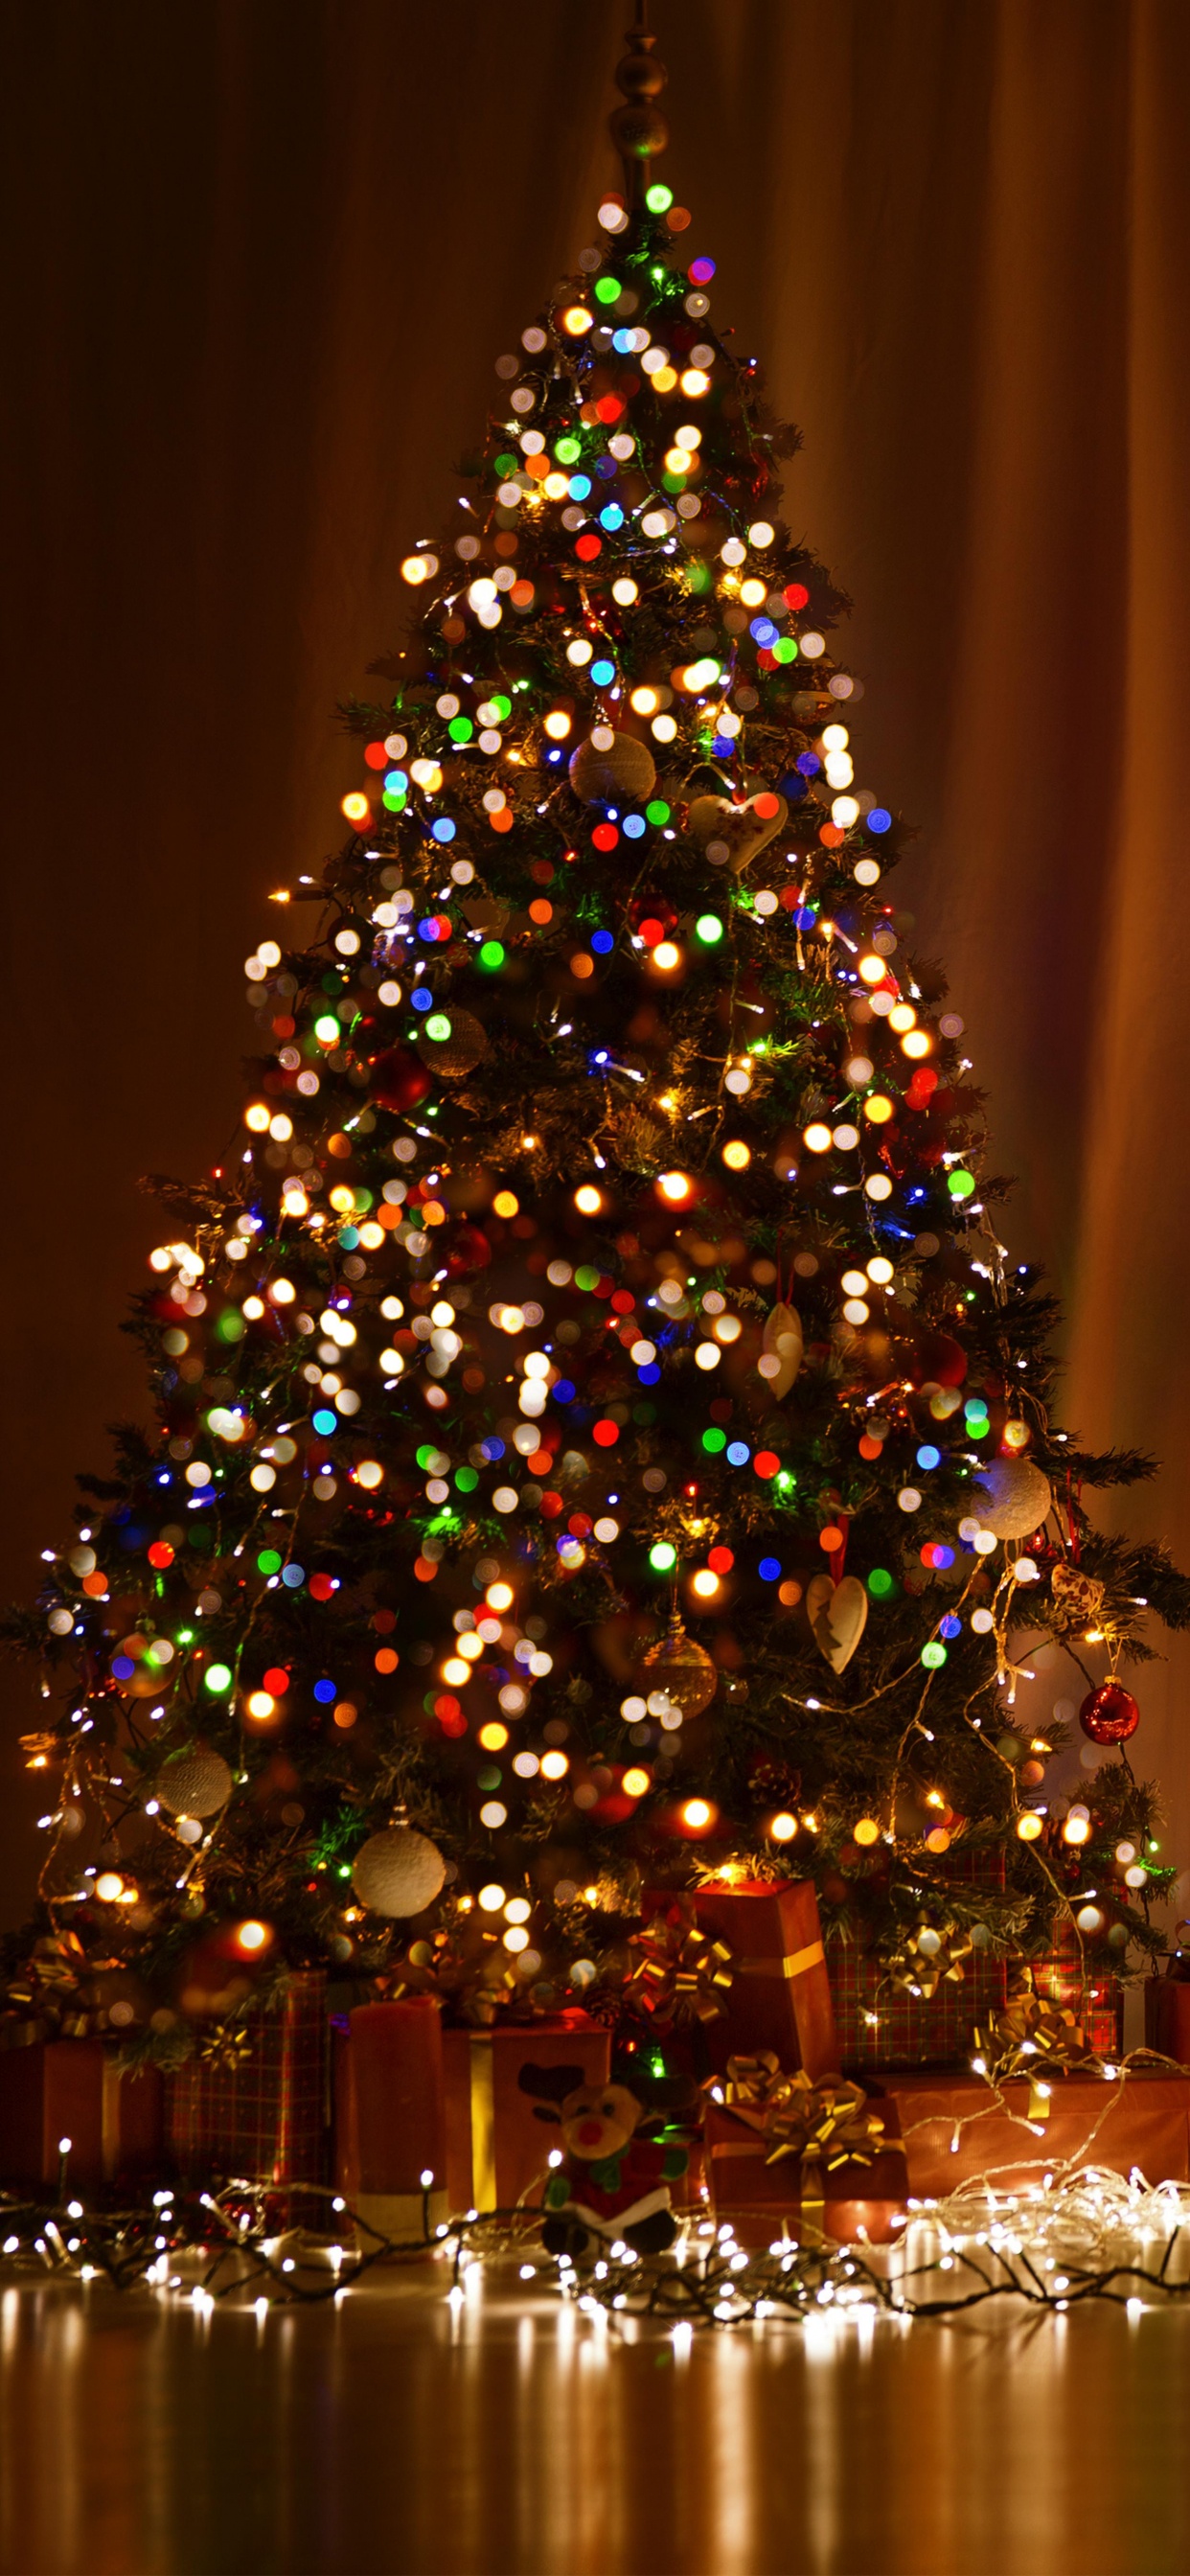 圣诞节那天, 圣诞树, 圣诞彩灯, 圣诞装饰, 假日 壁纸 1242x2688 允许